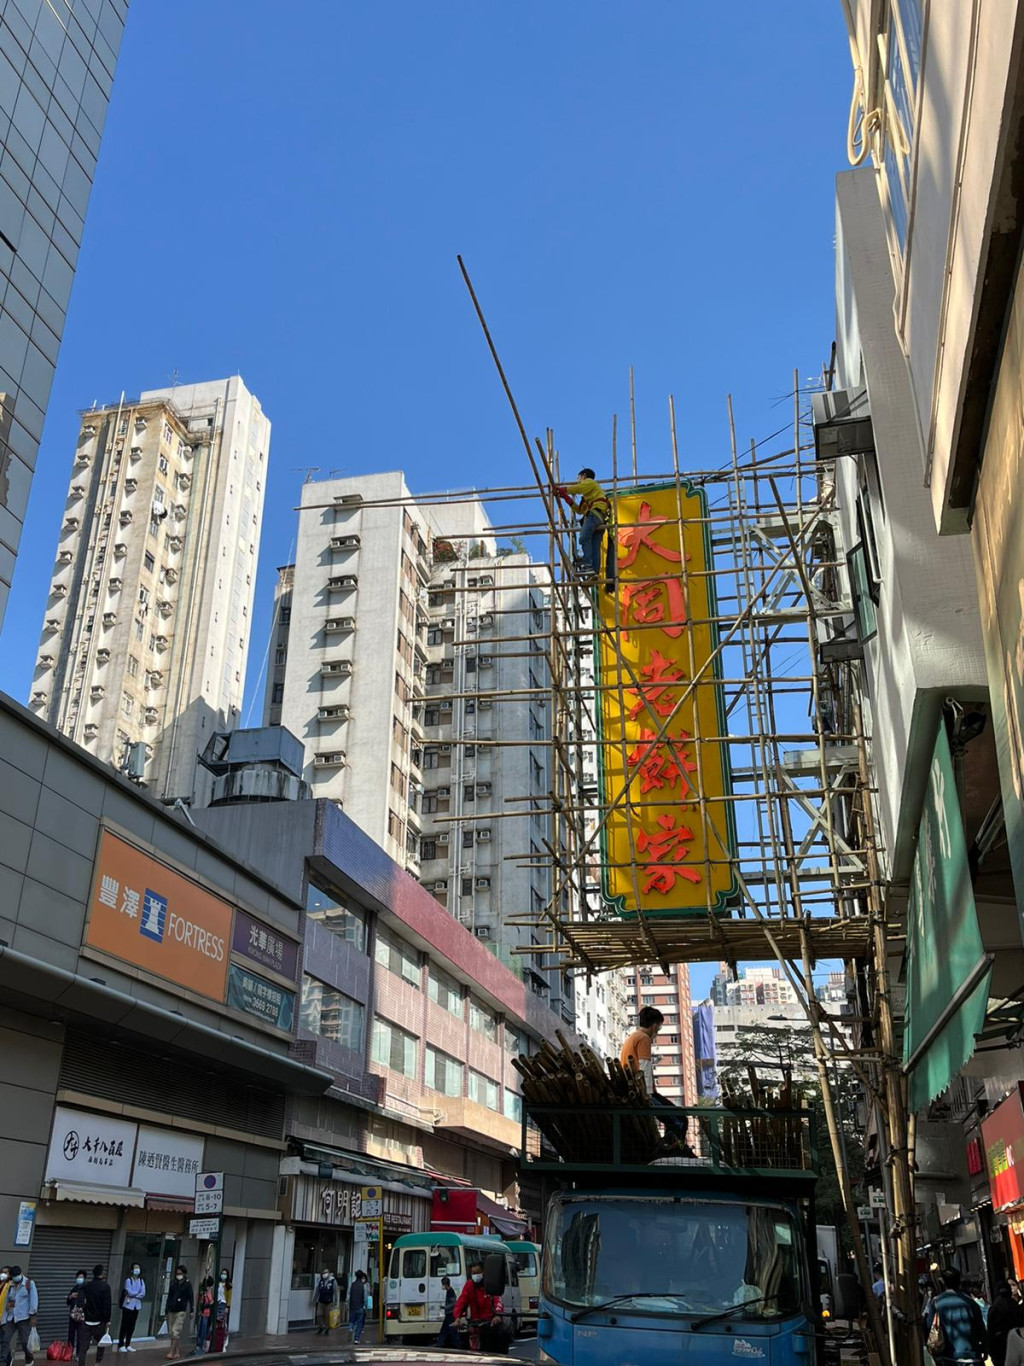 工人上月底开始围封准备拆卸。(香港行迹fb)